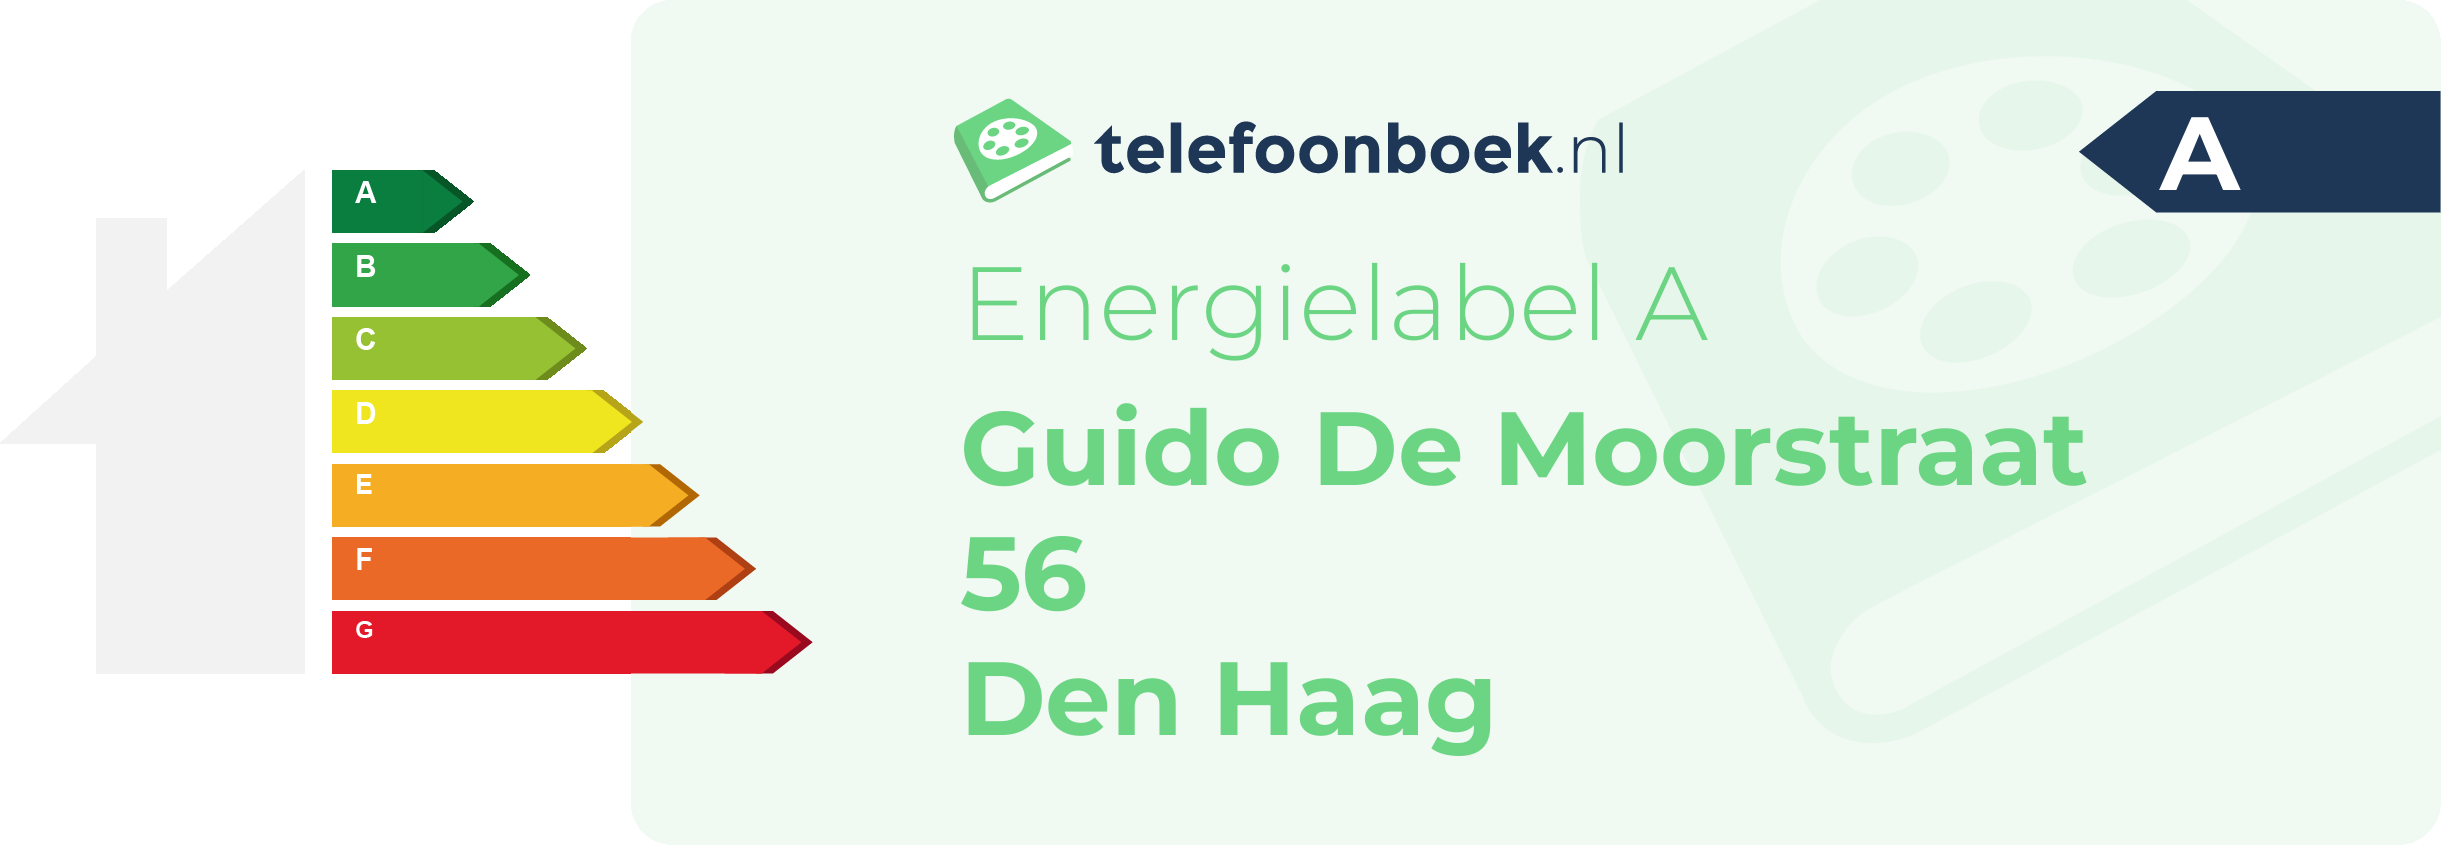 Energielabel Guido De Moorstraat 56 Den Haag